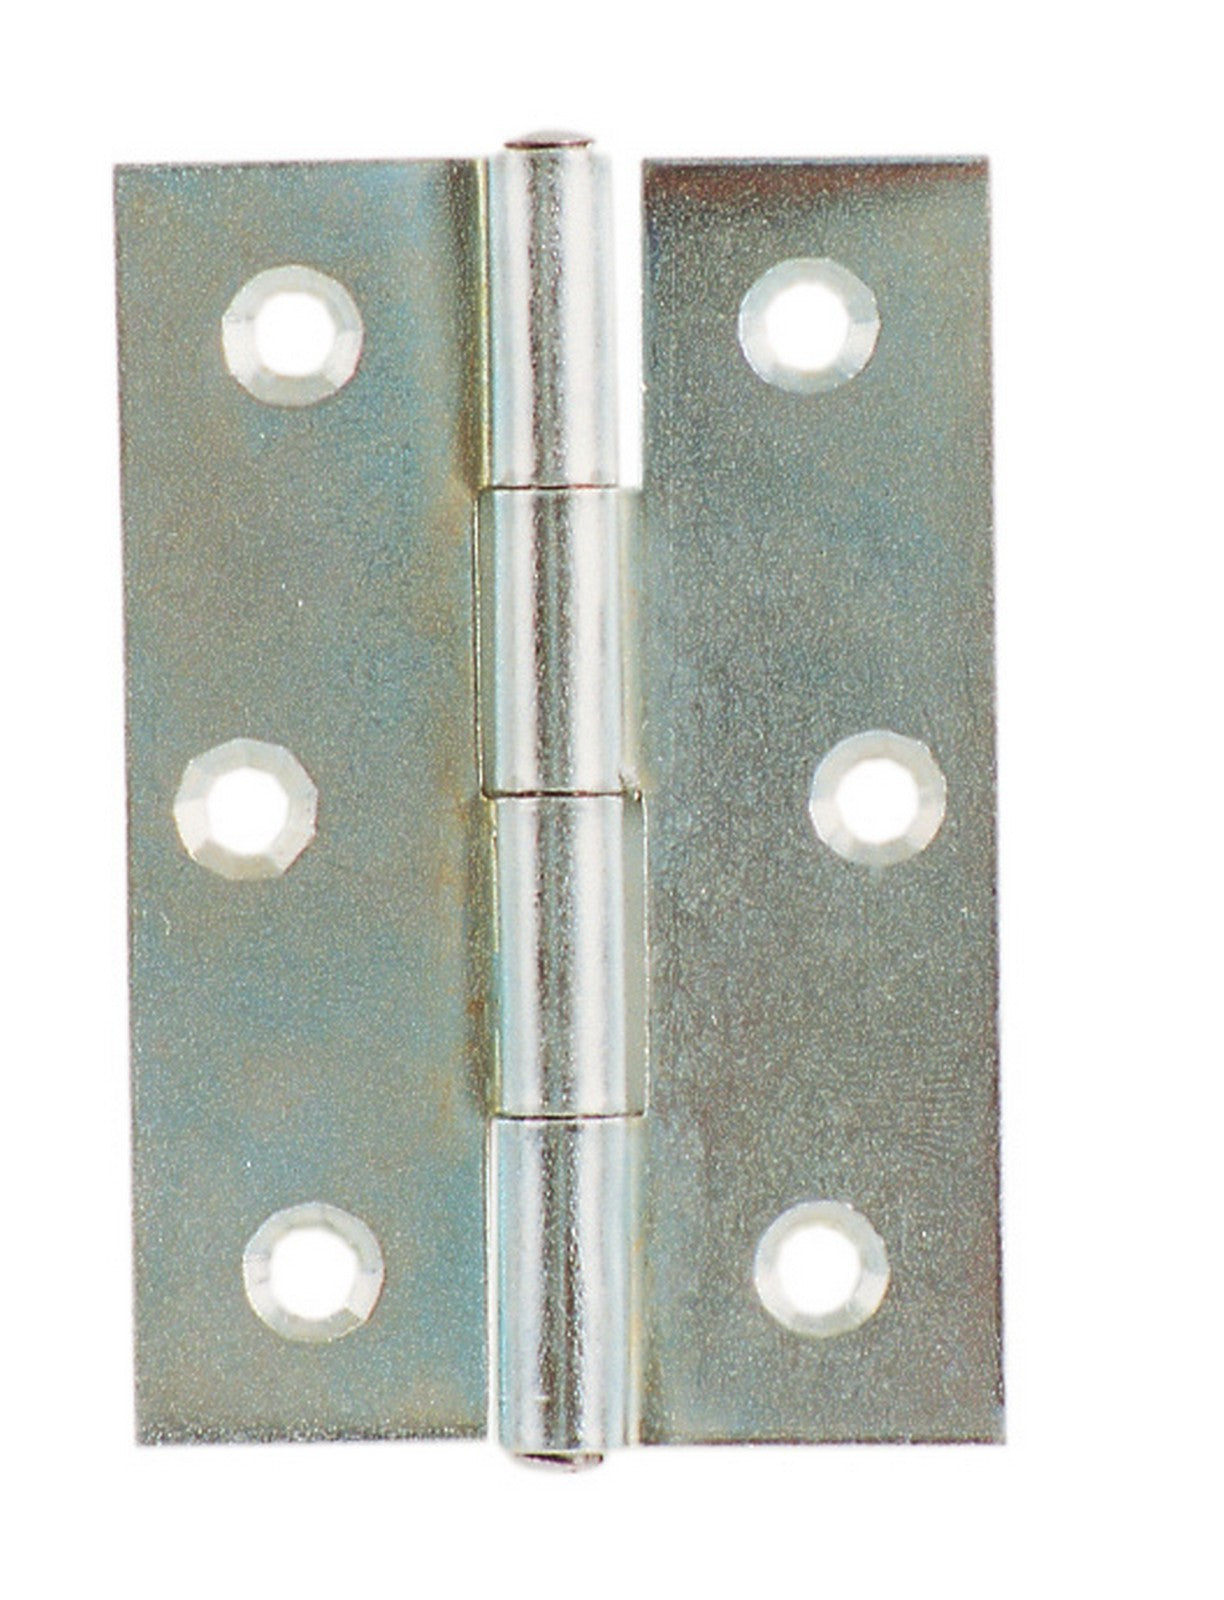 24pz cerniera con perno fisso in acciaio zincato mm 50x40x1,3 art.838 cod:ferx.48763